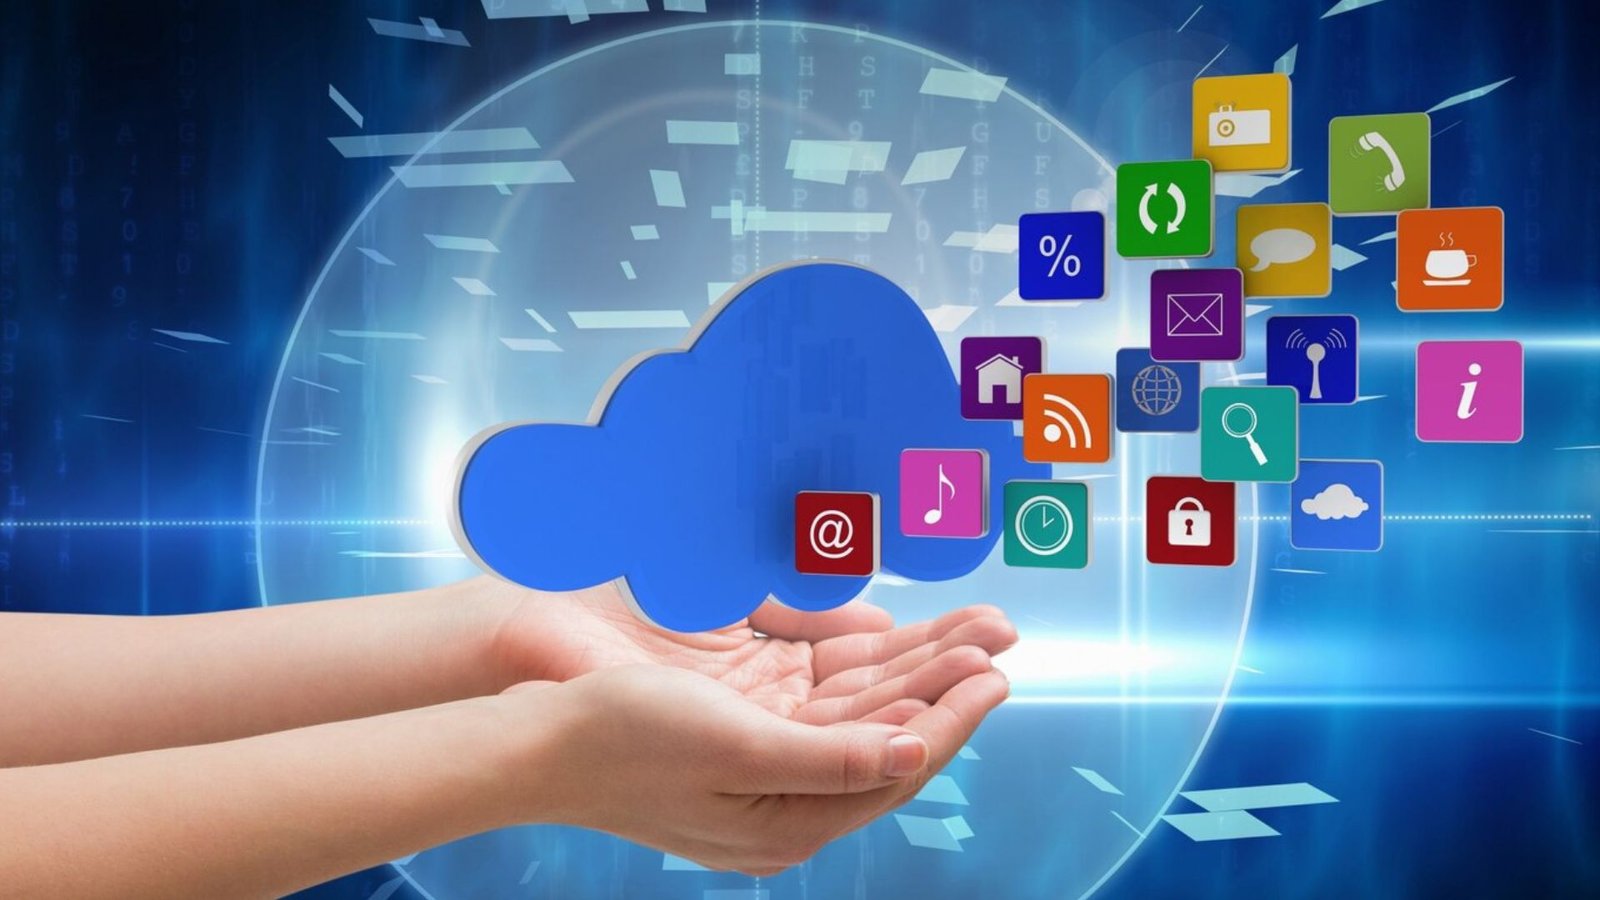 Cloud Applications concept